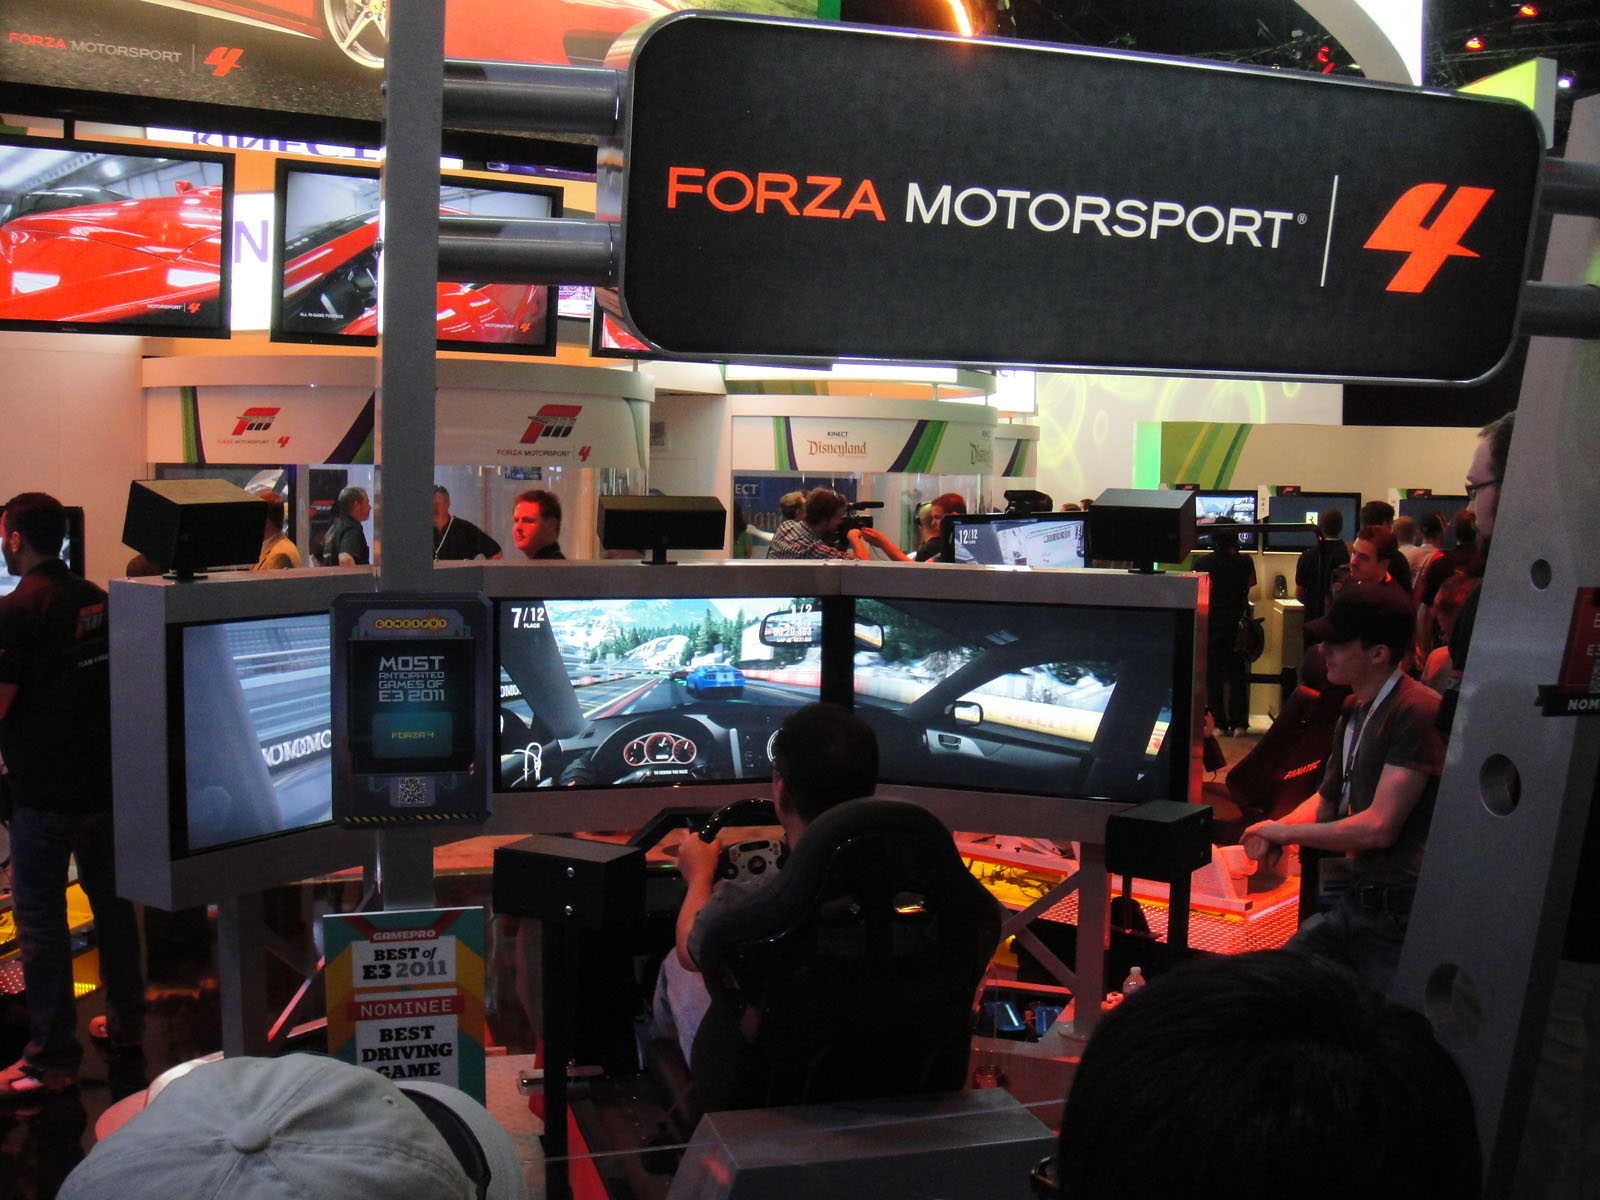 Los requisitos de Forza Horizon 4 serán mas bajos que en Forza